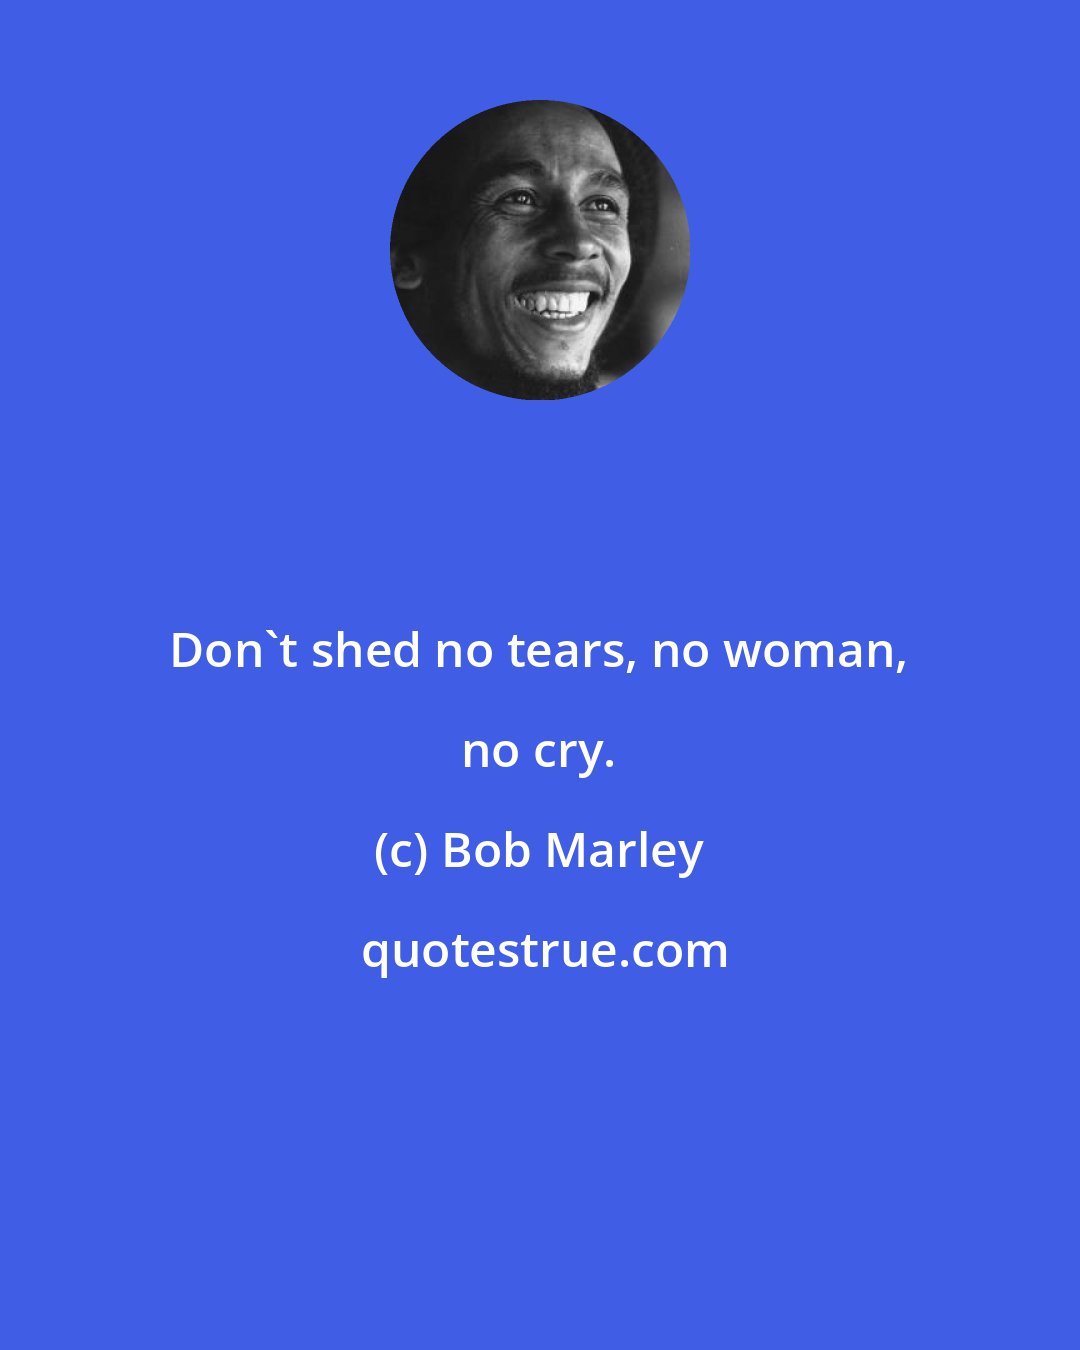 Bob Marley: Don't shed no tears, no woman, no cry.